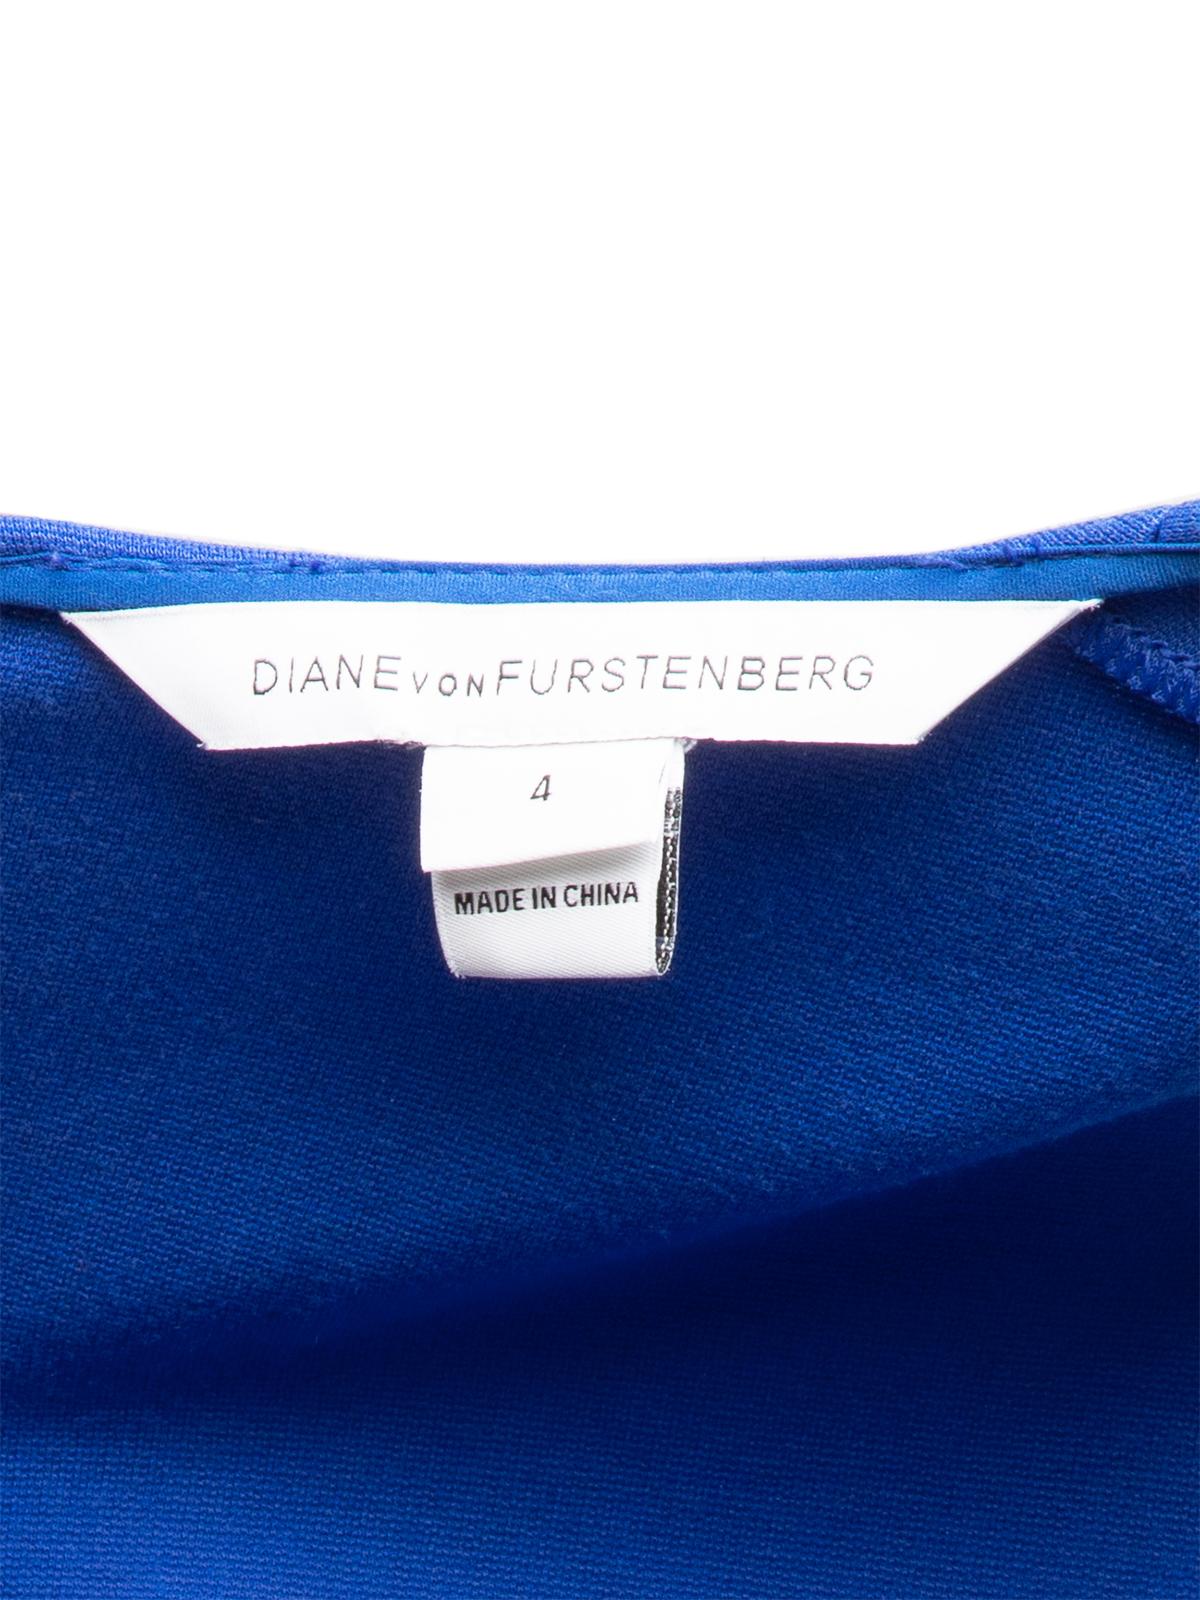 Pre-Loved Diane Von Furstenberg Women's Sleeveless Fit and Flare Dress 1